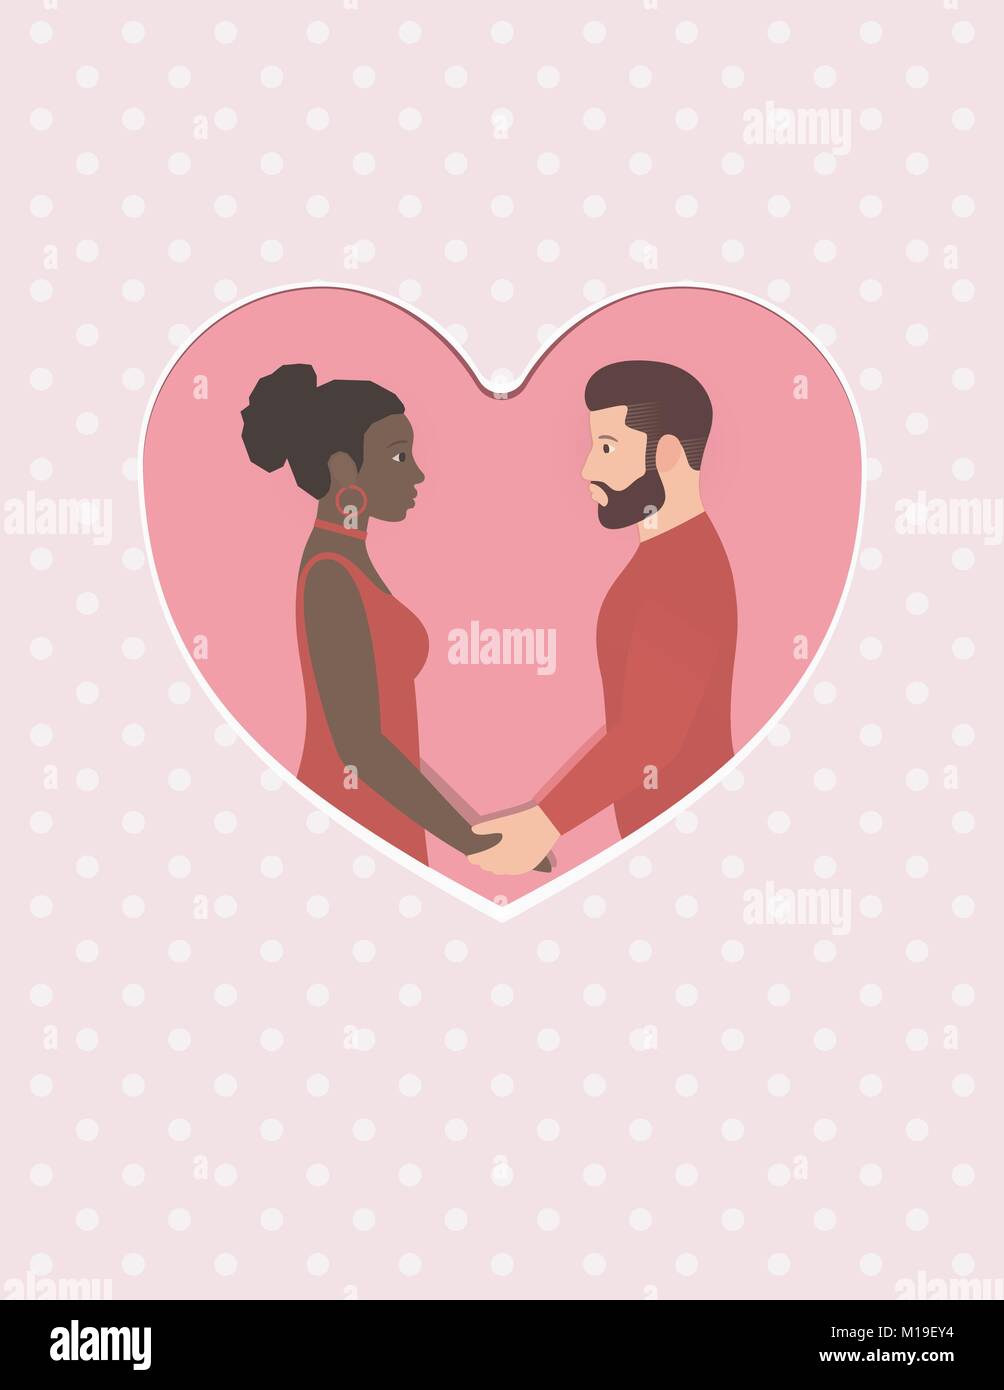 Weißer Mann und schöne afro-amerikanische Frau Bärtigen. Happy gemischtrassiges Paar in Liebe, halten sich an den Händen und schaut in die Augen. Grußkarte für Happy Valentines Tag. Hochzeit oder Jubiläum. Stock Vektor